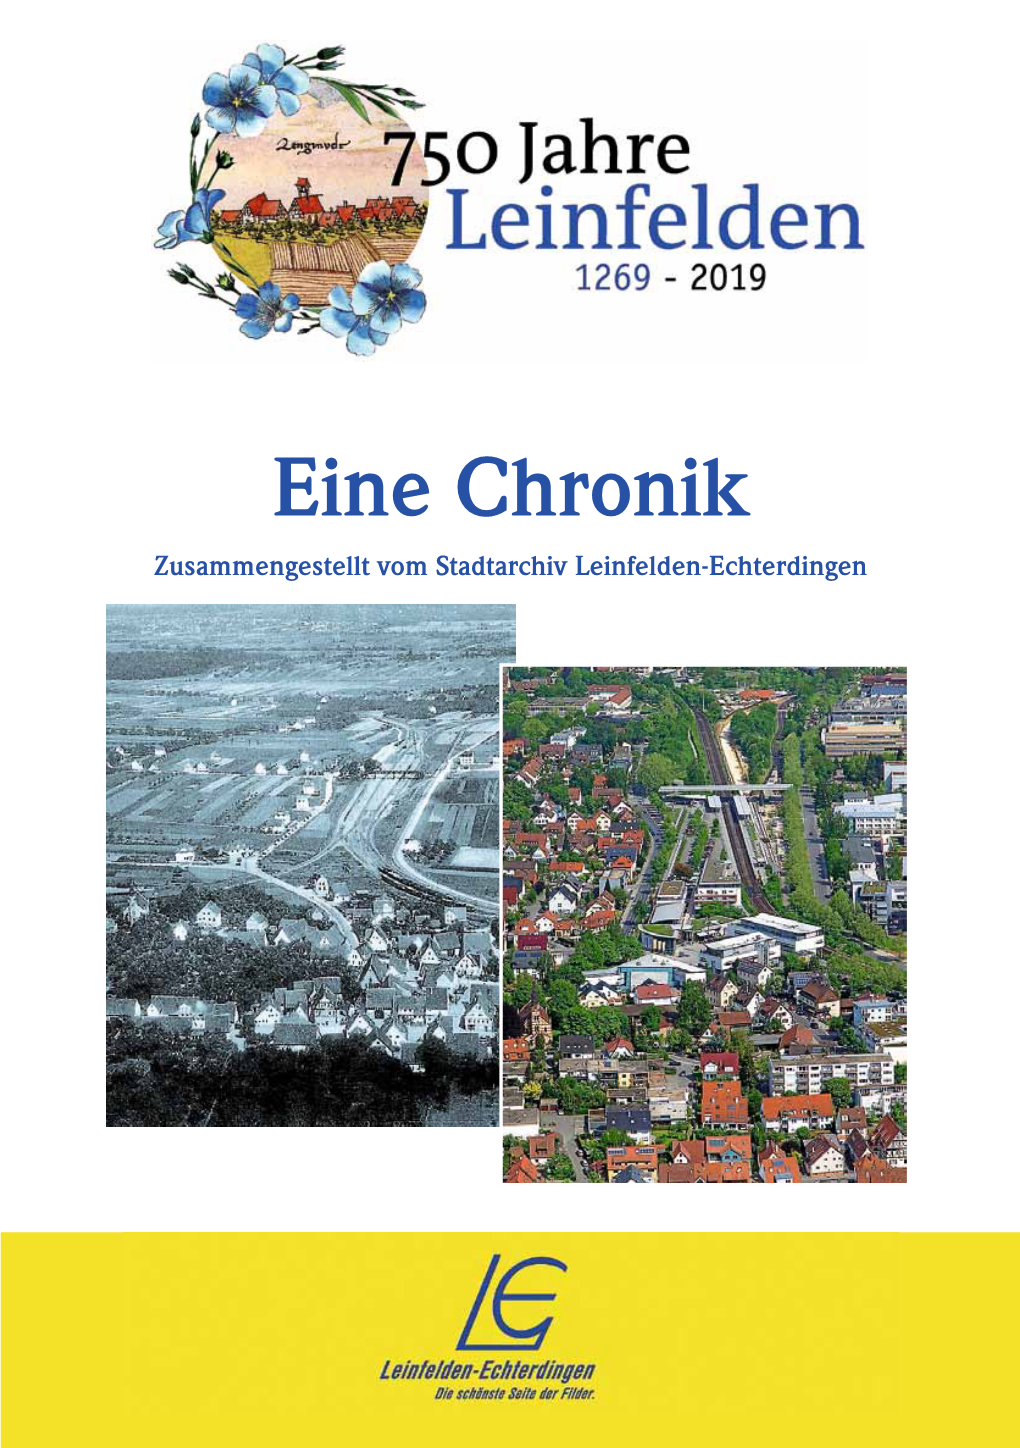 750 Jahre Leinfelden 1269-2019 – Eine Chronik